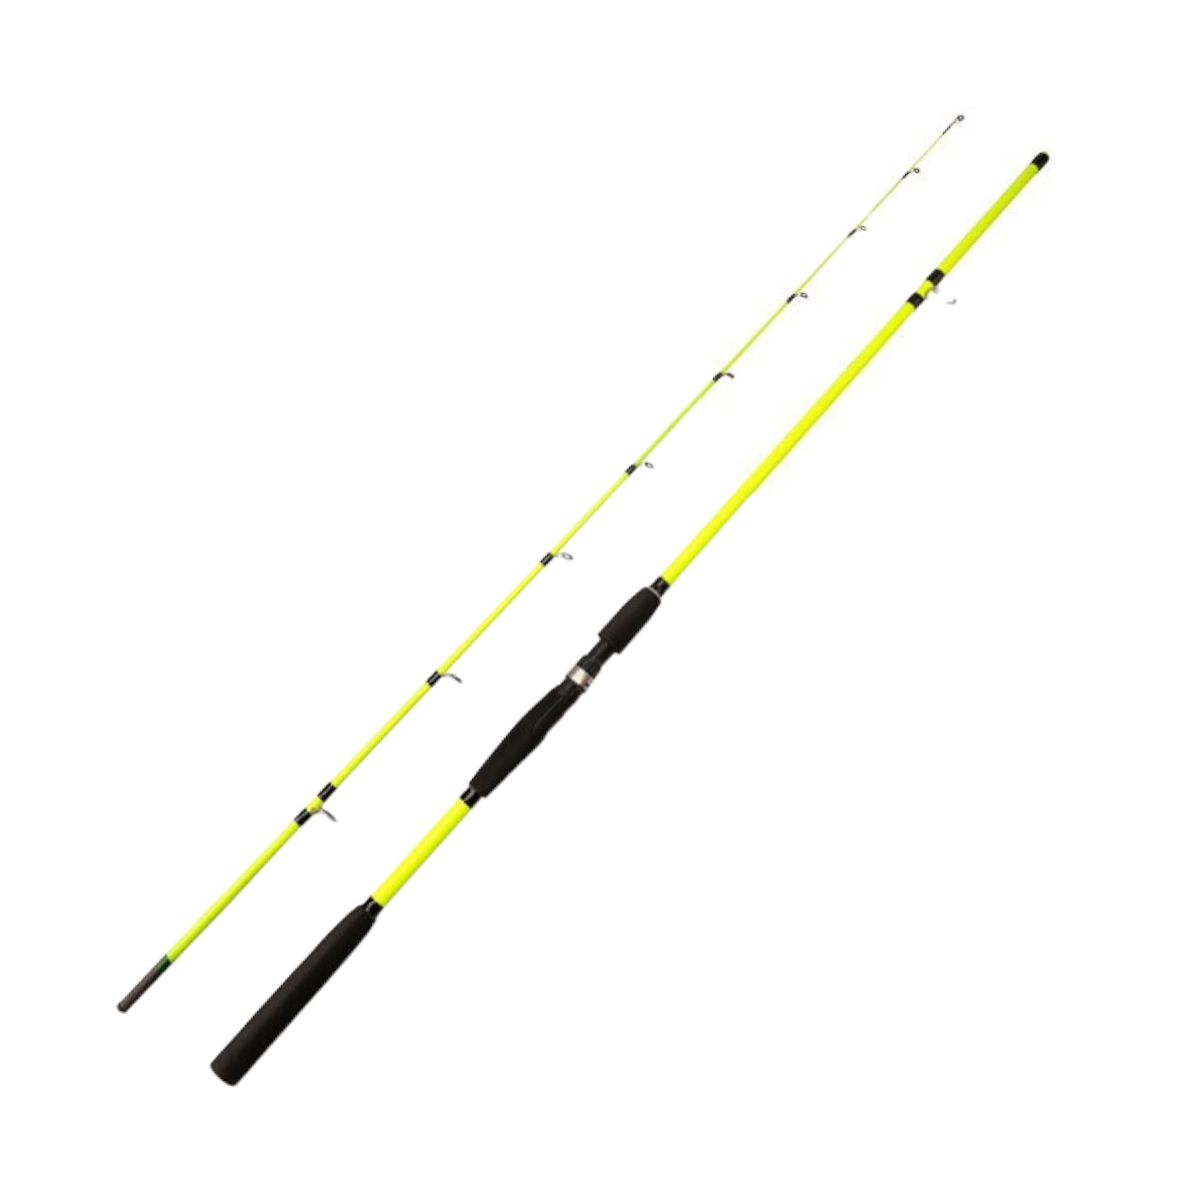 Caña pescar fibra carbono flexible amarilla 270 cm CÑS38